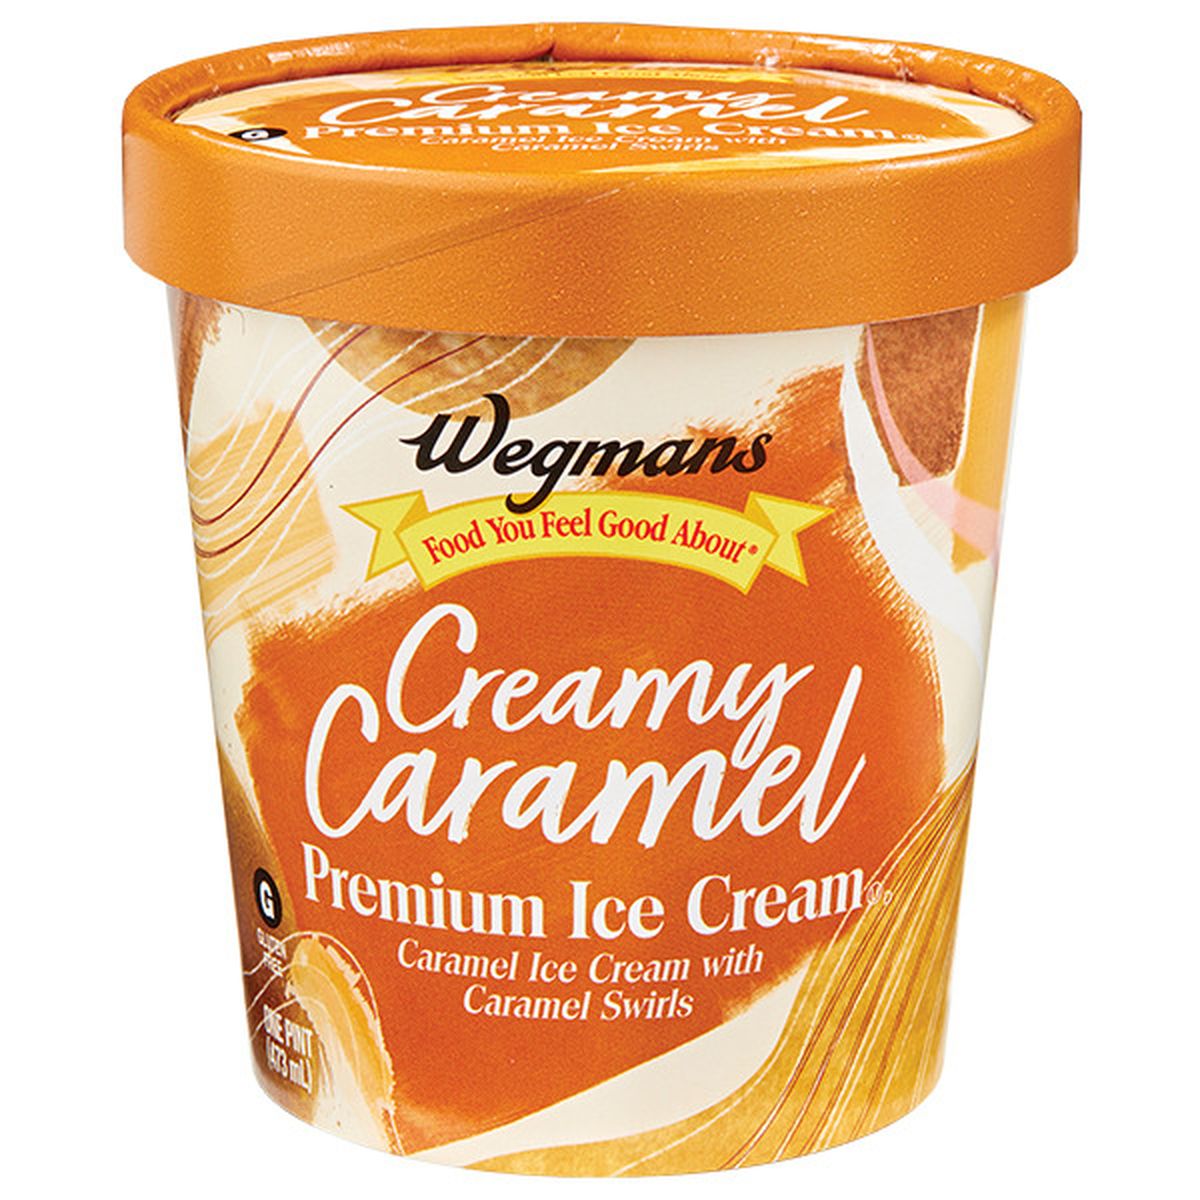 Calories in Wegmans Creamy Caramel Premium Ice Cream